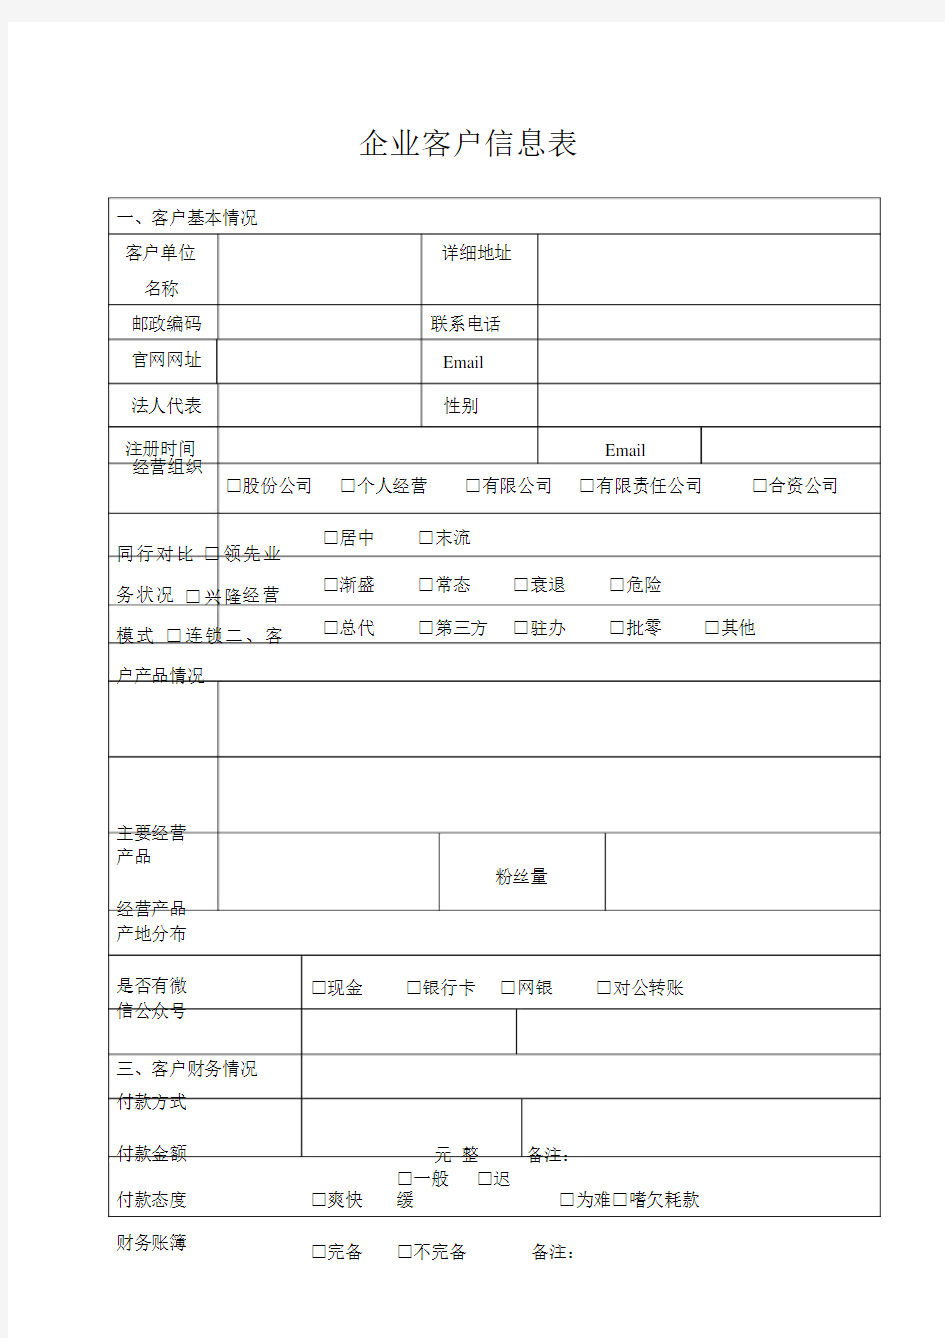 (完整版)企业客户信息表_全.doc